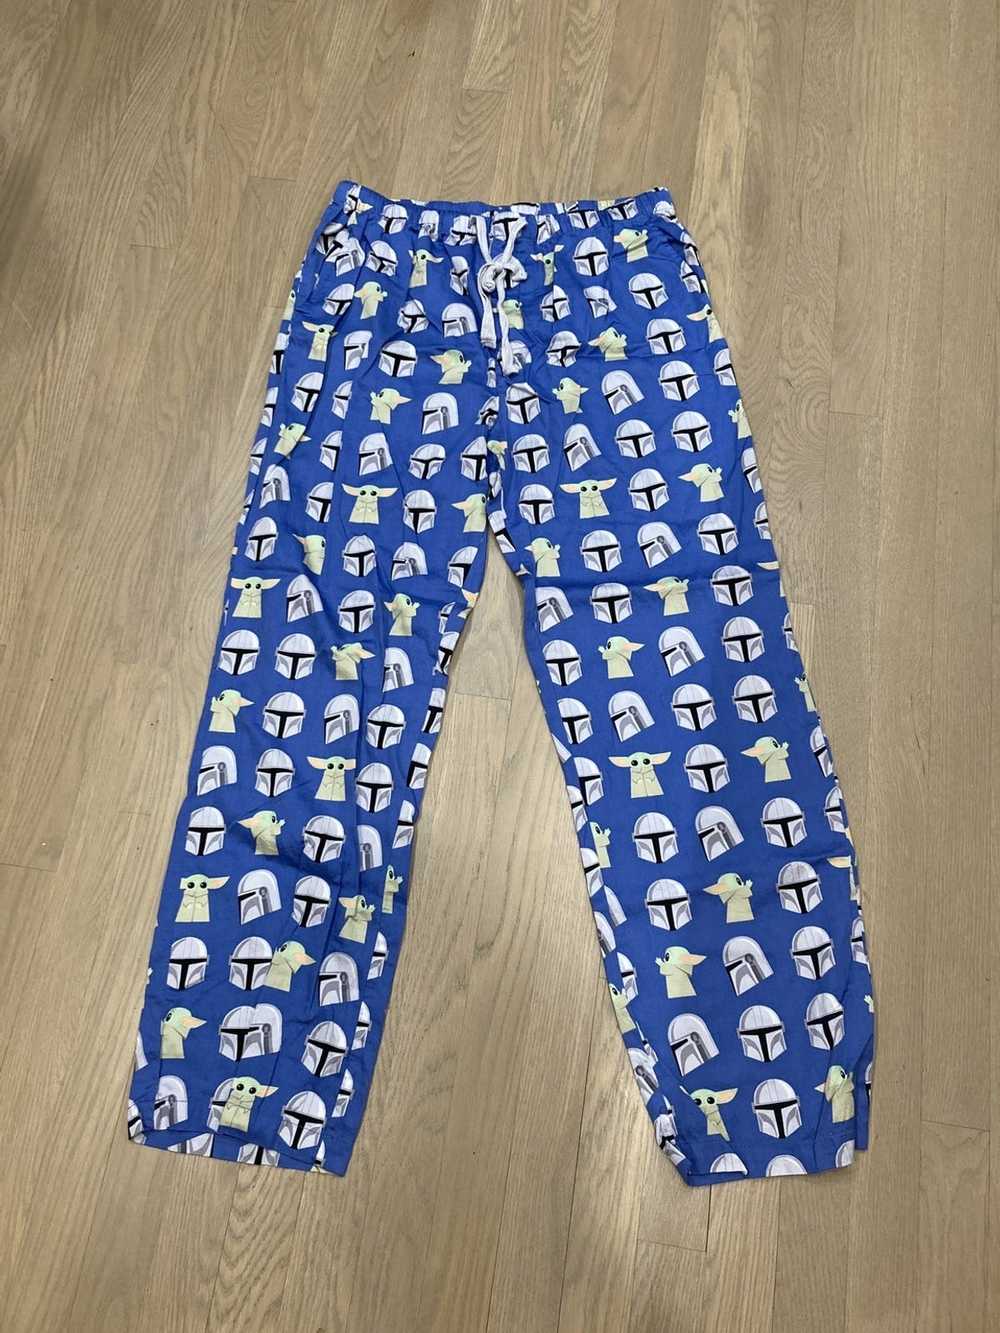 Star Wars STAR WARS pajama pants - Gem